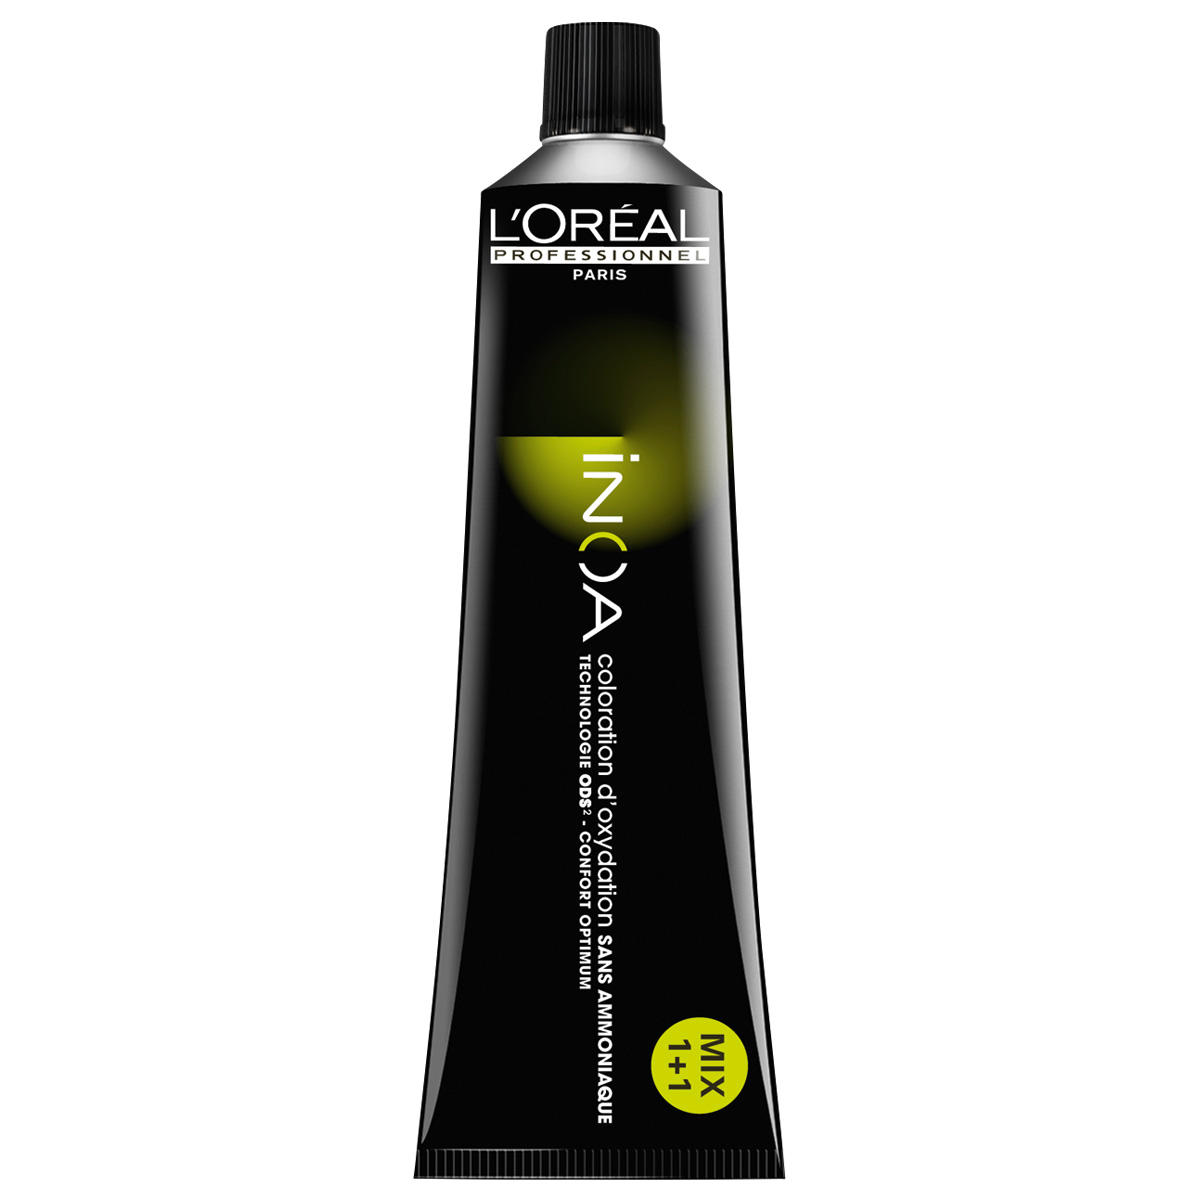 L'Oréal Professionnel Paris Coloration 6 Donker blond, tube 60 ml